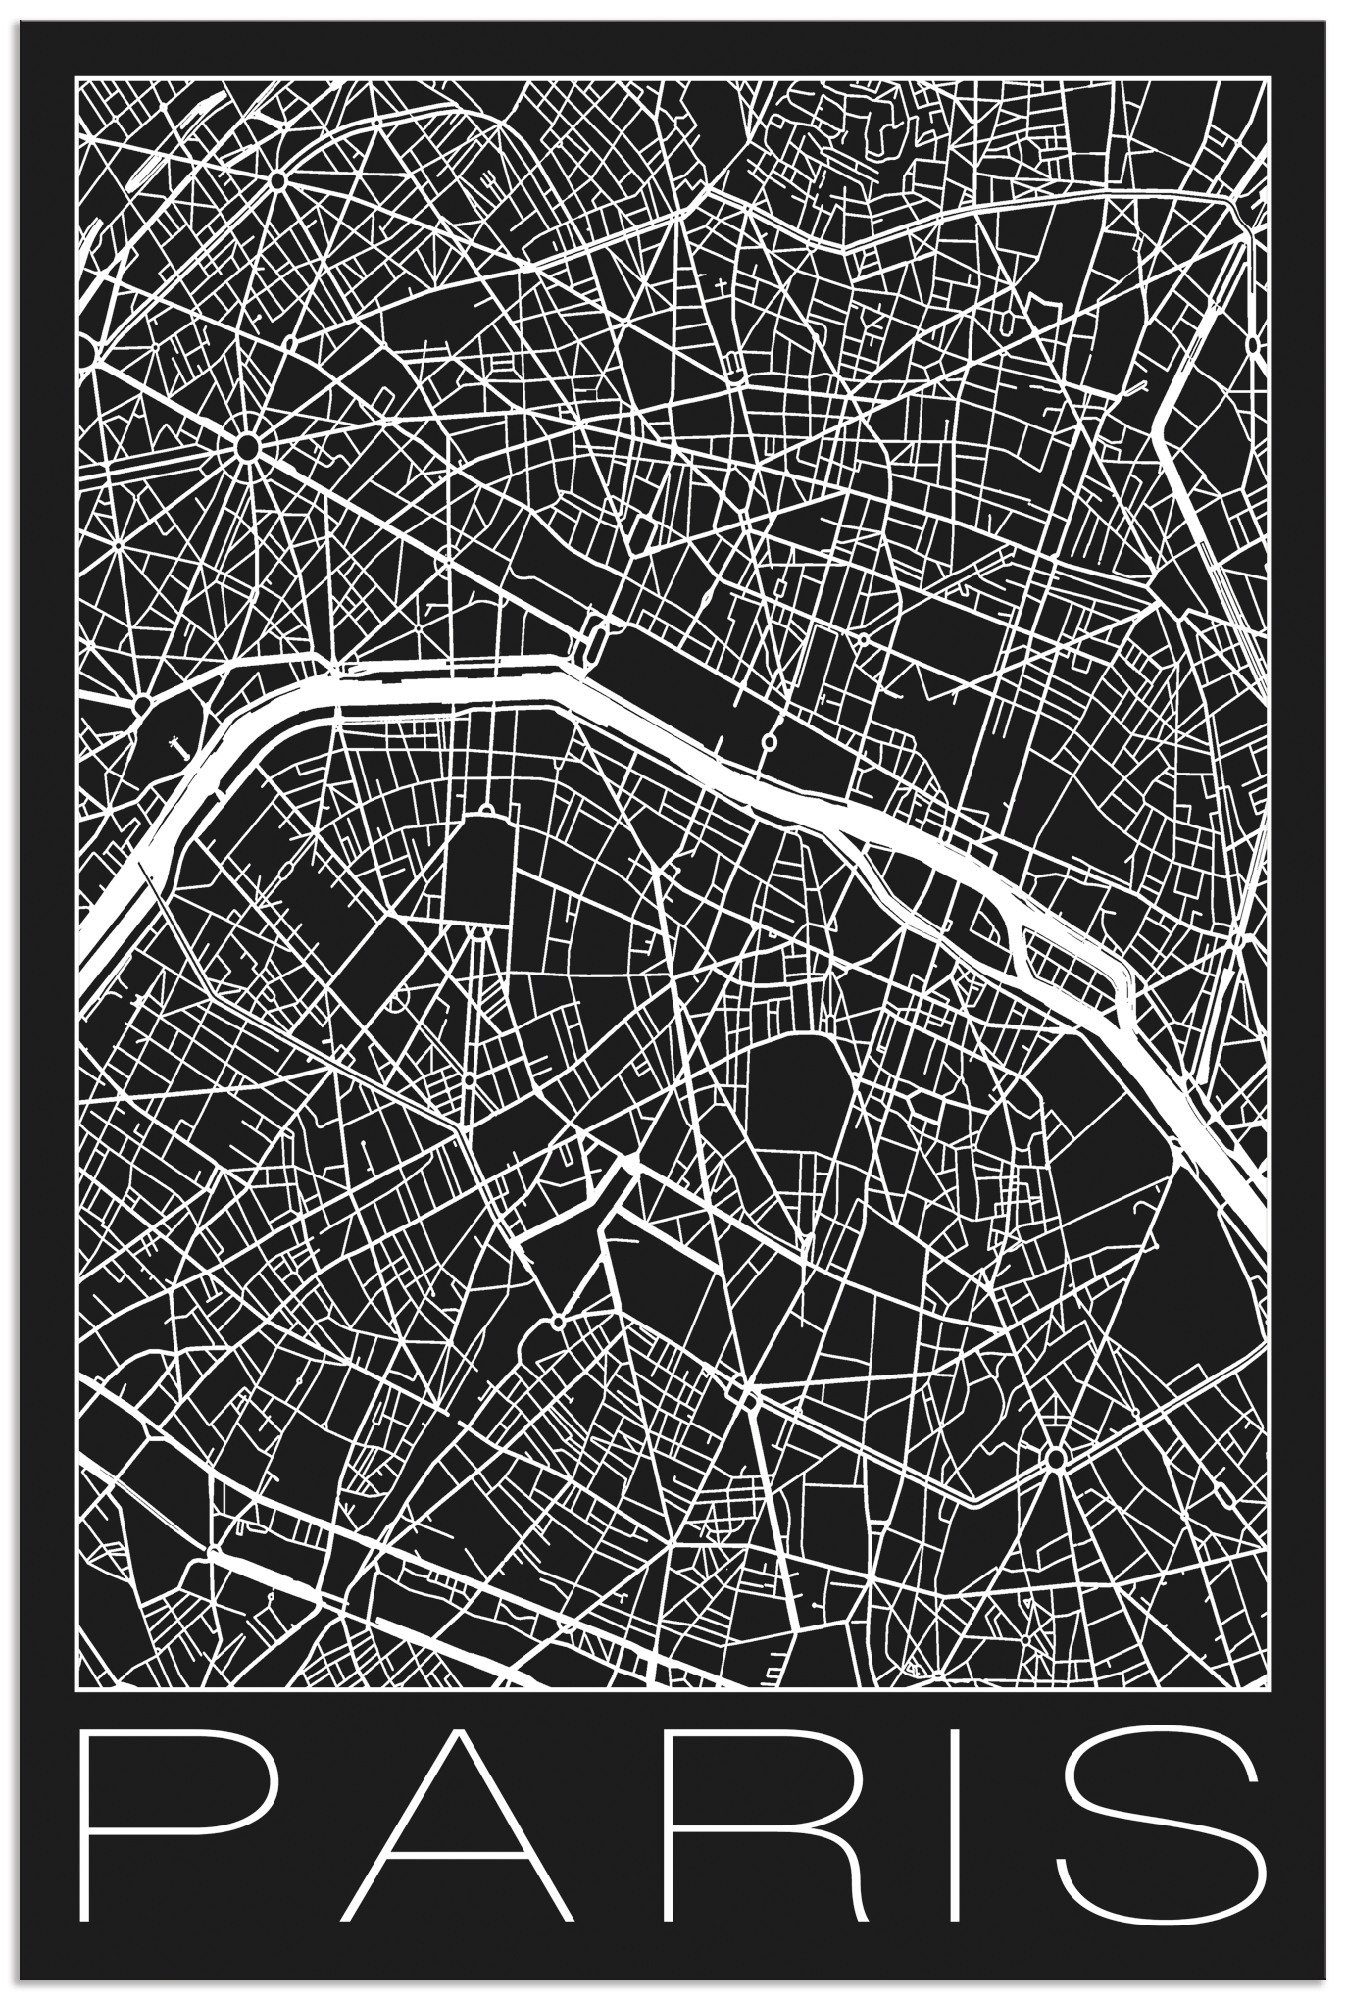 Artland Artprint Retro kaart Parijs Frankrijk zwart in vele afmetingen & productsoorten - artprint van aluminium / artprint voor buiten, artprint op linnen, poster, muursticker / w